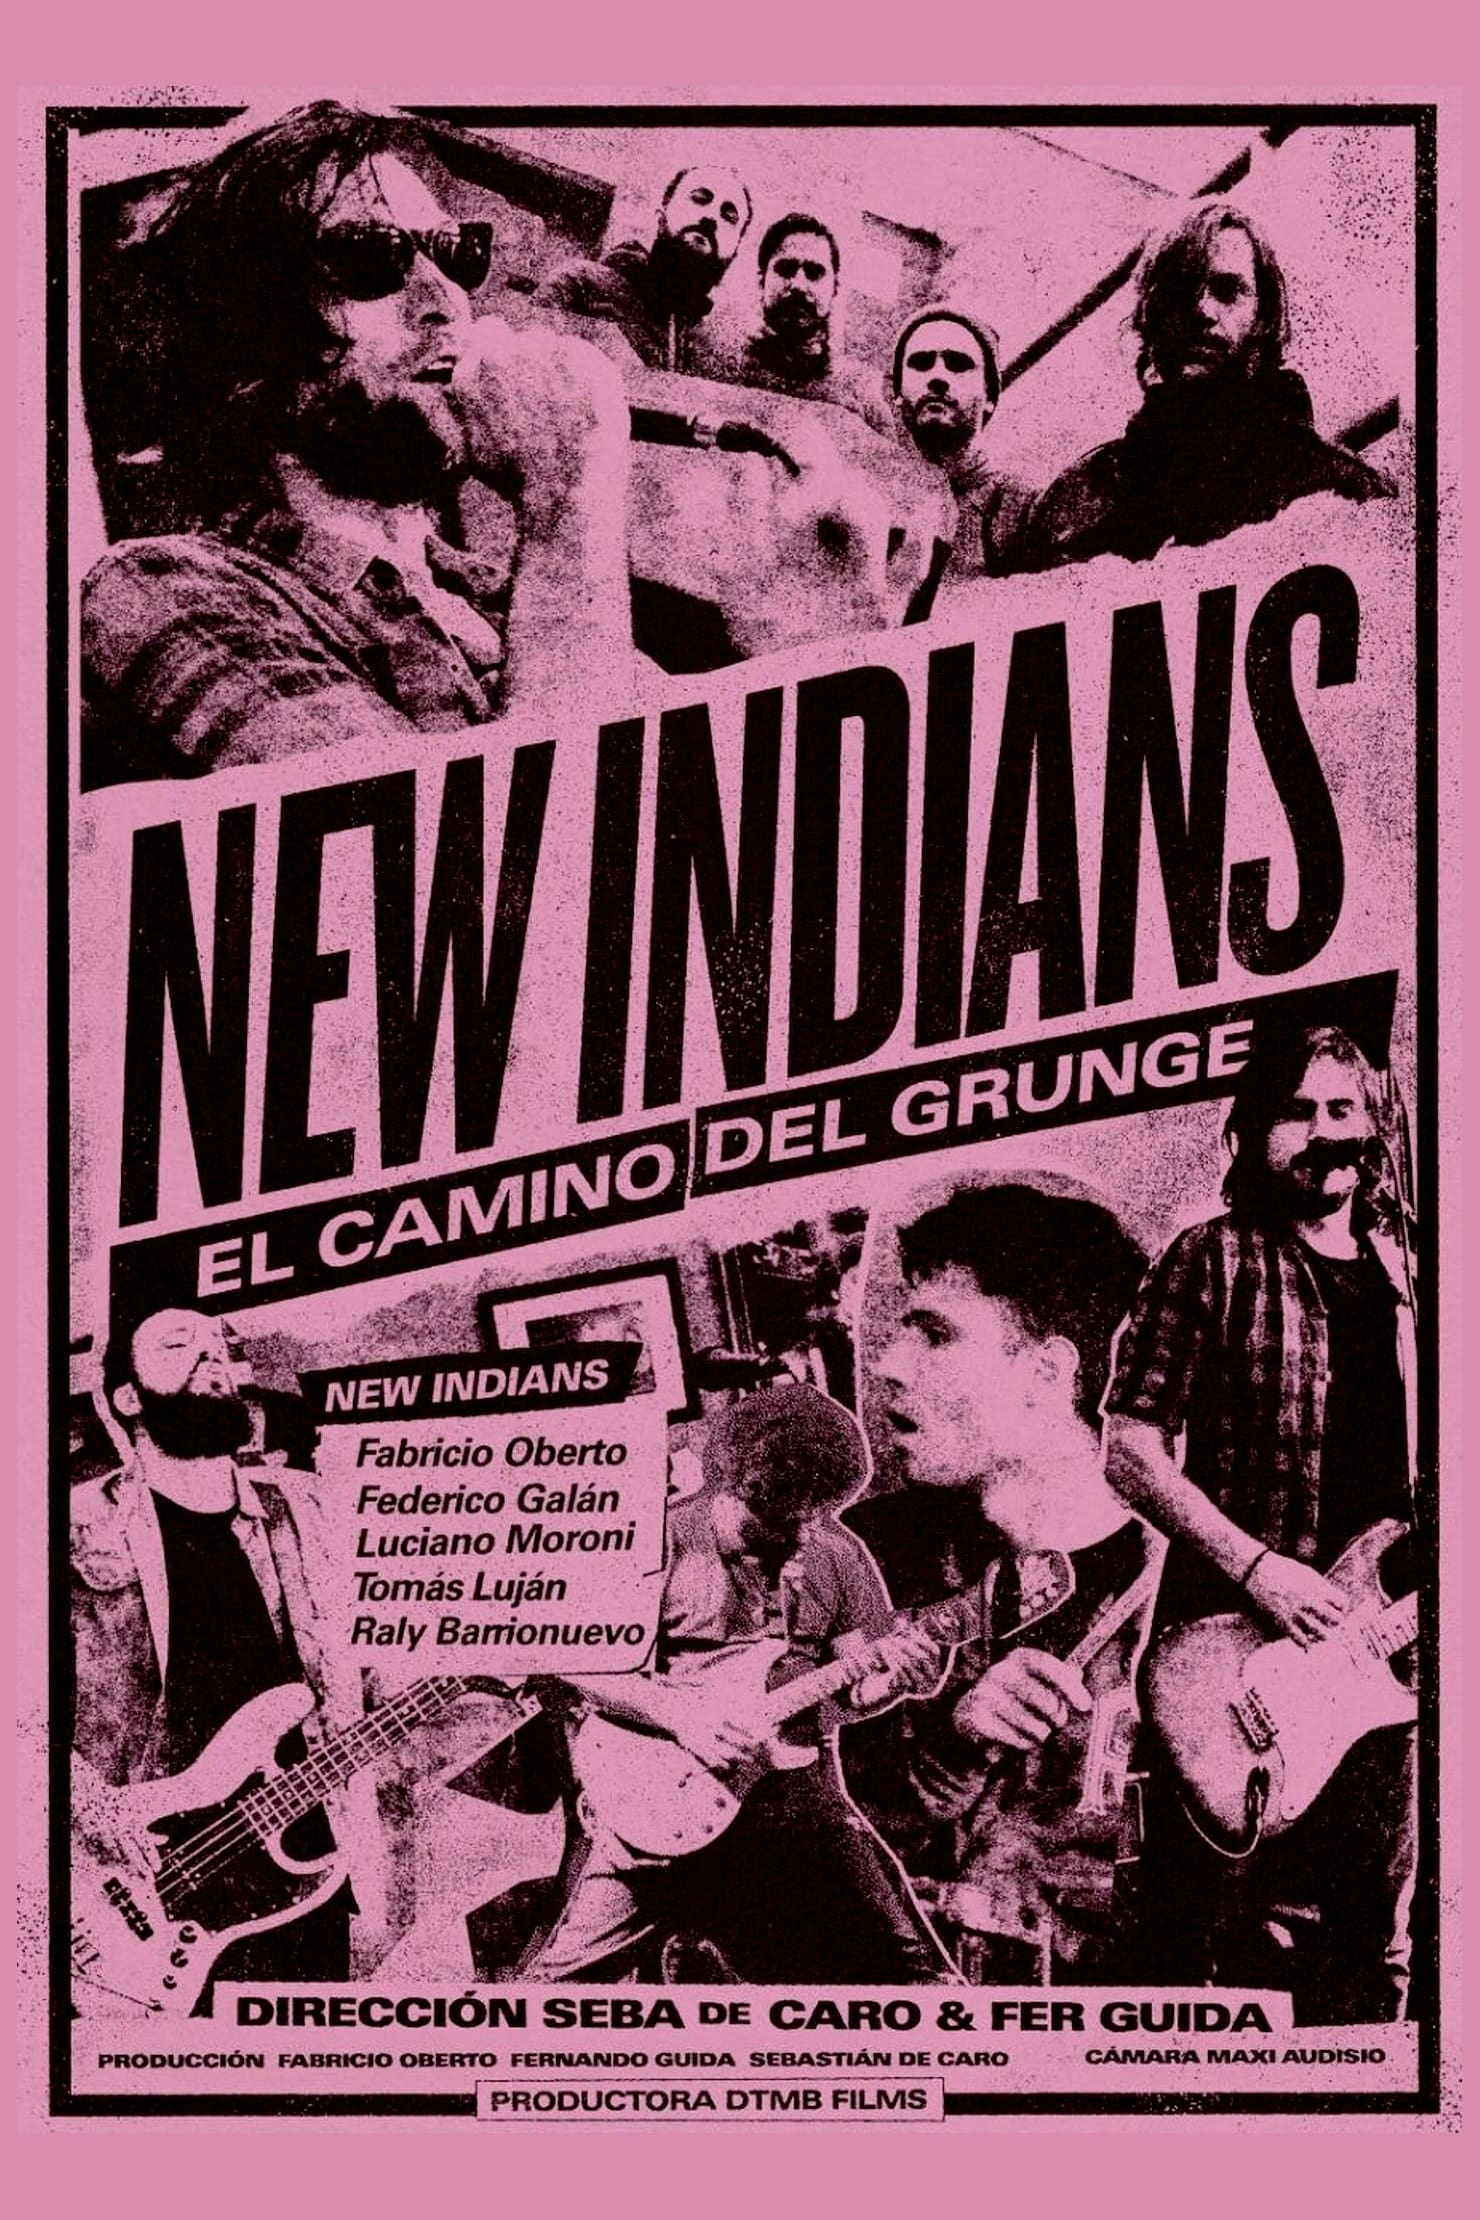 New Indians: el camino del grunge